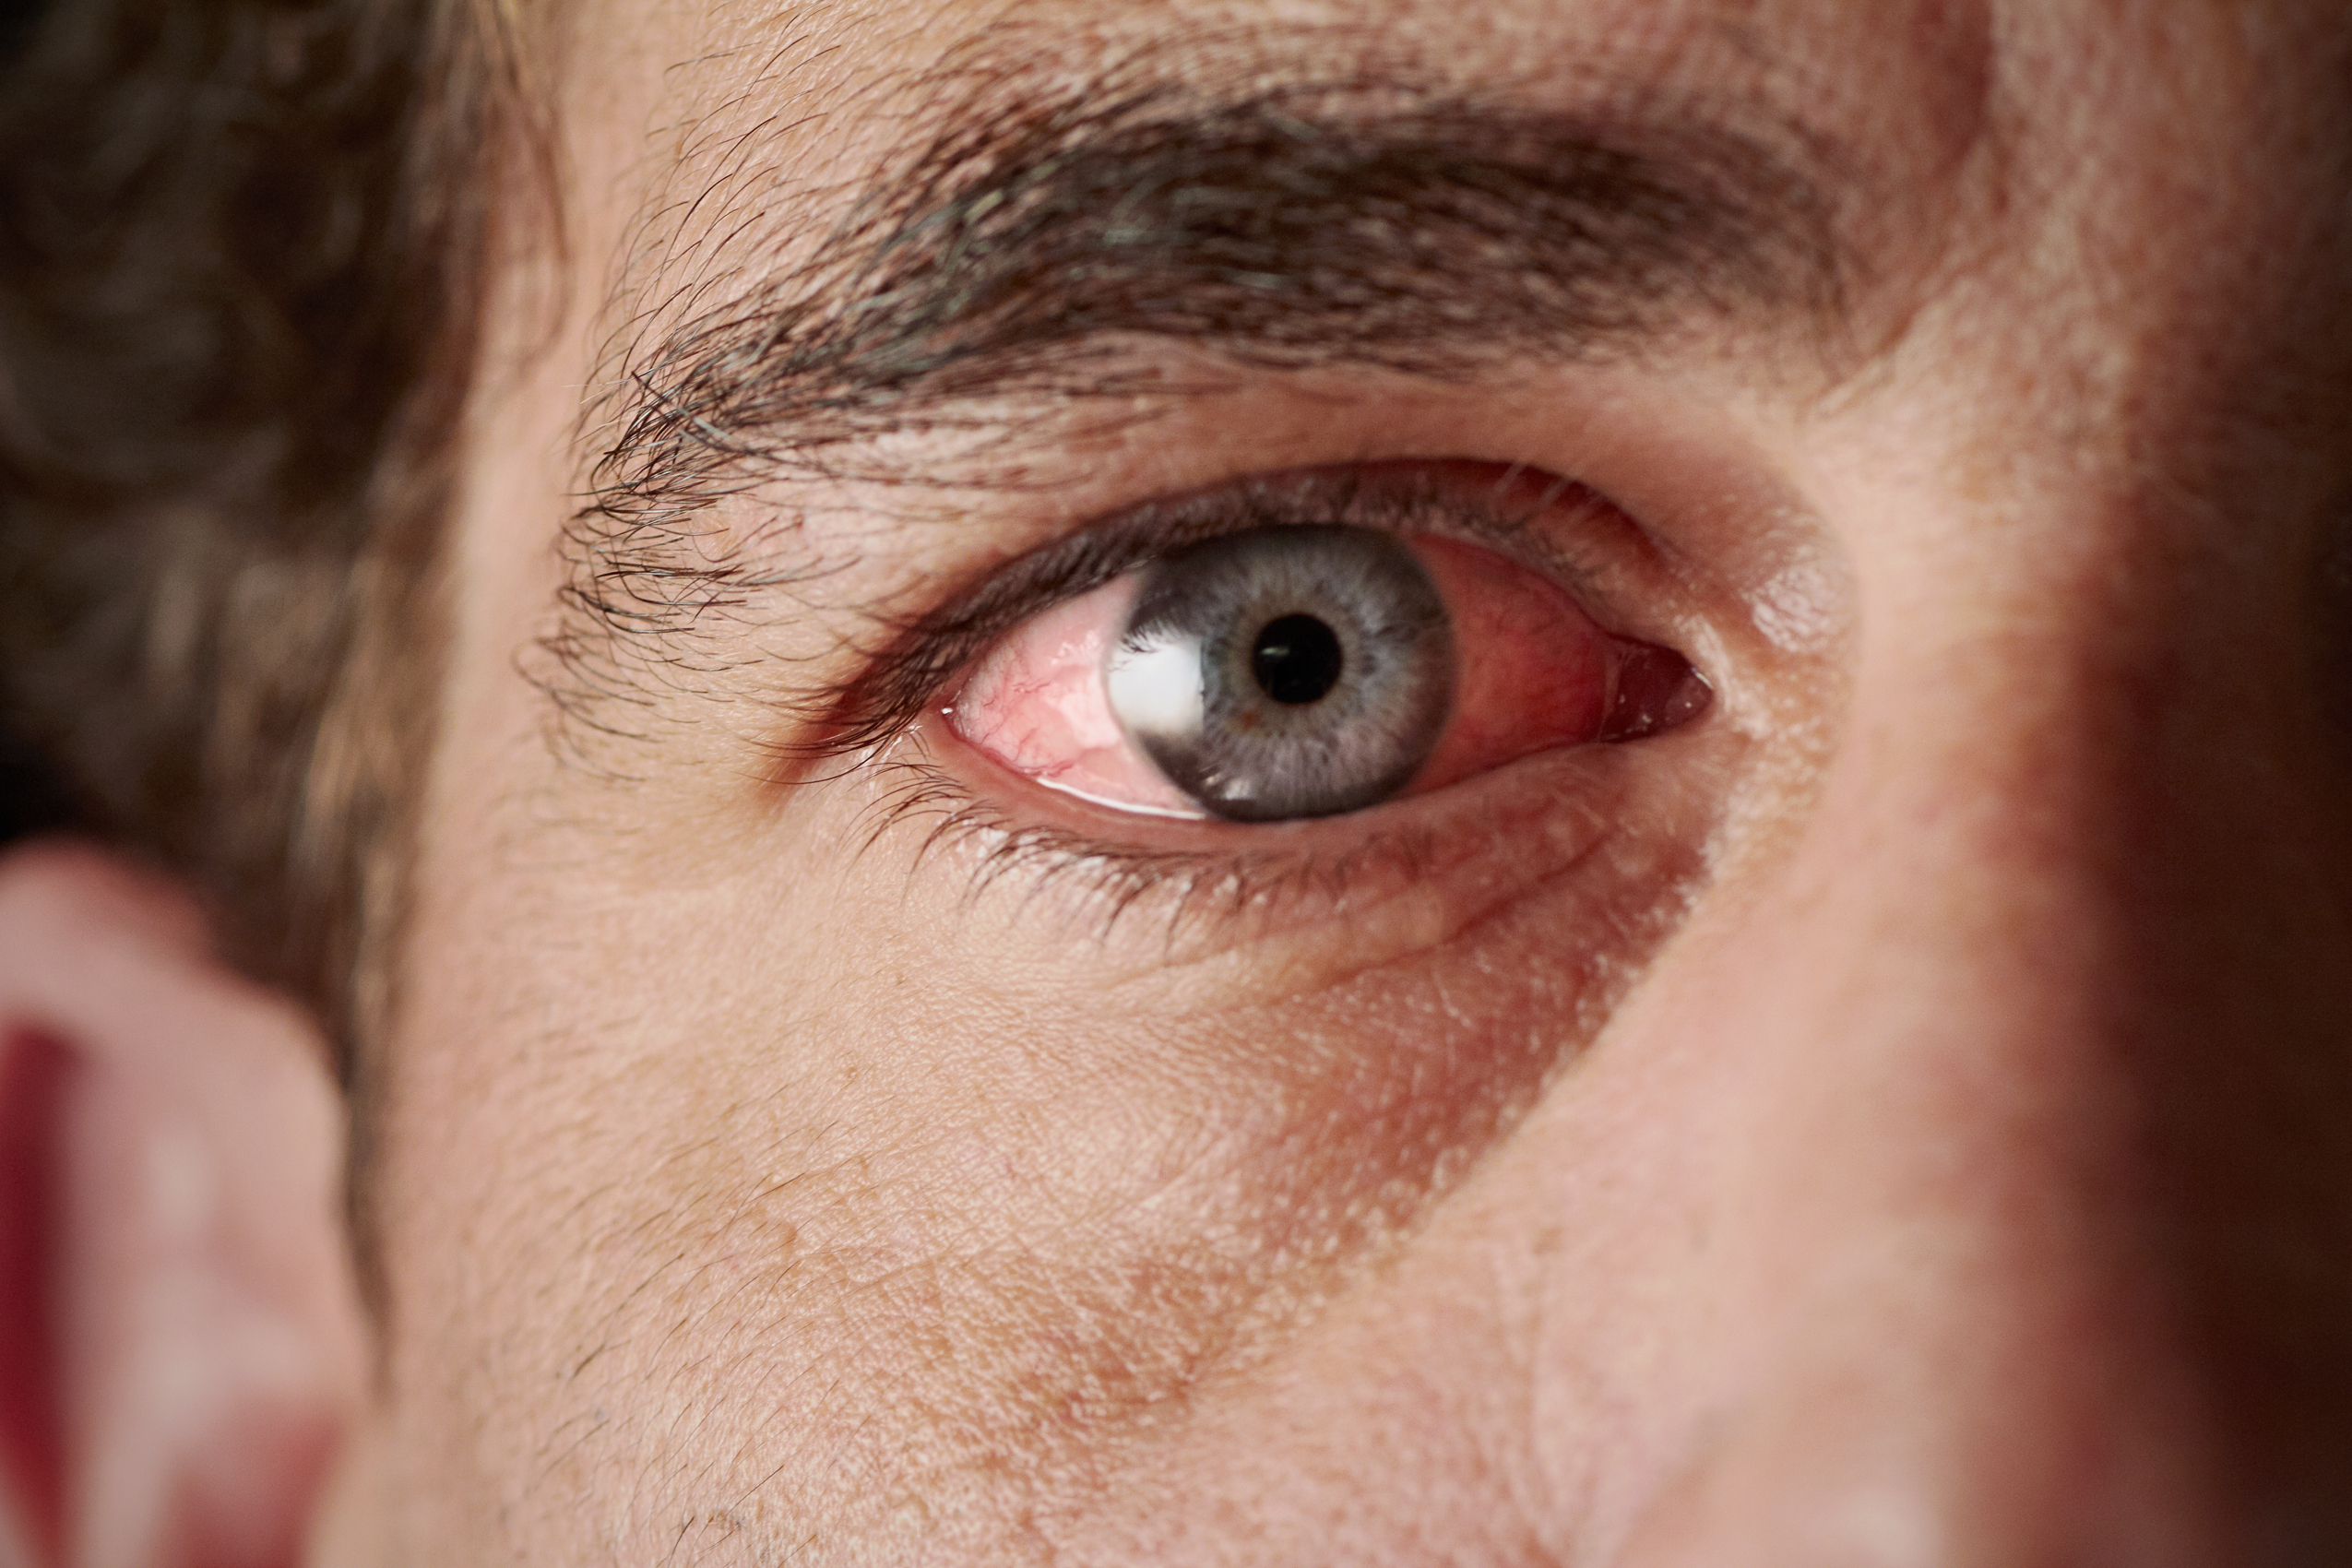 La uveítis es una enfermedad que consiste en la inflamación de la úvea, en los ojos. (Foto Prensa Libre: Shutterstock)